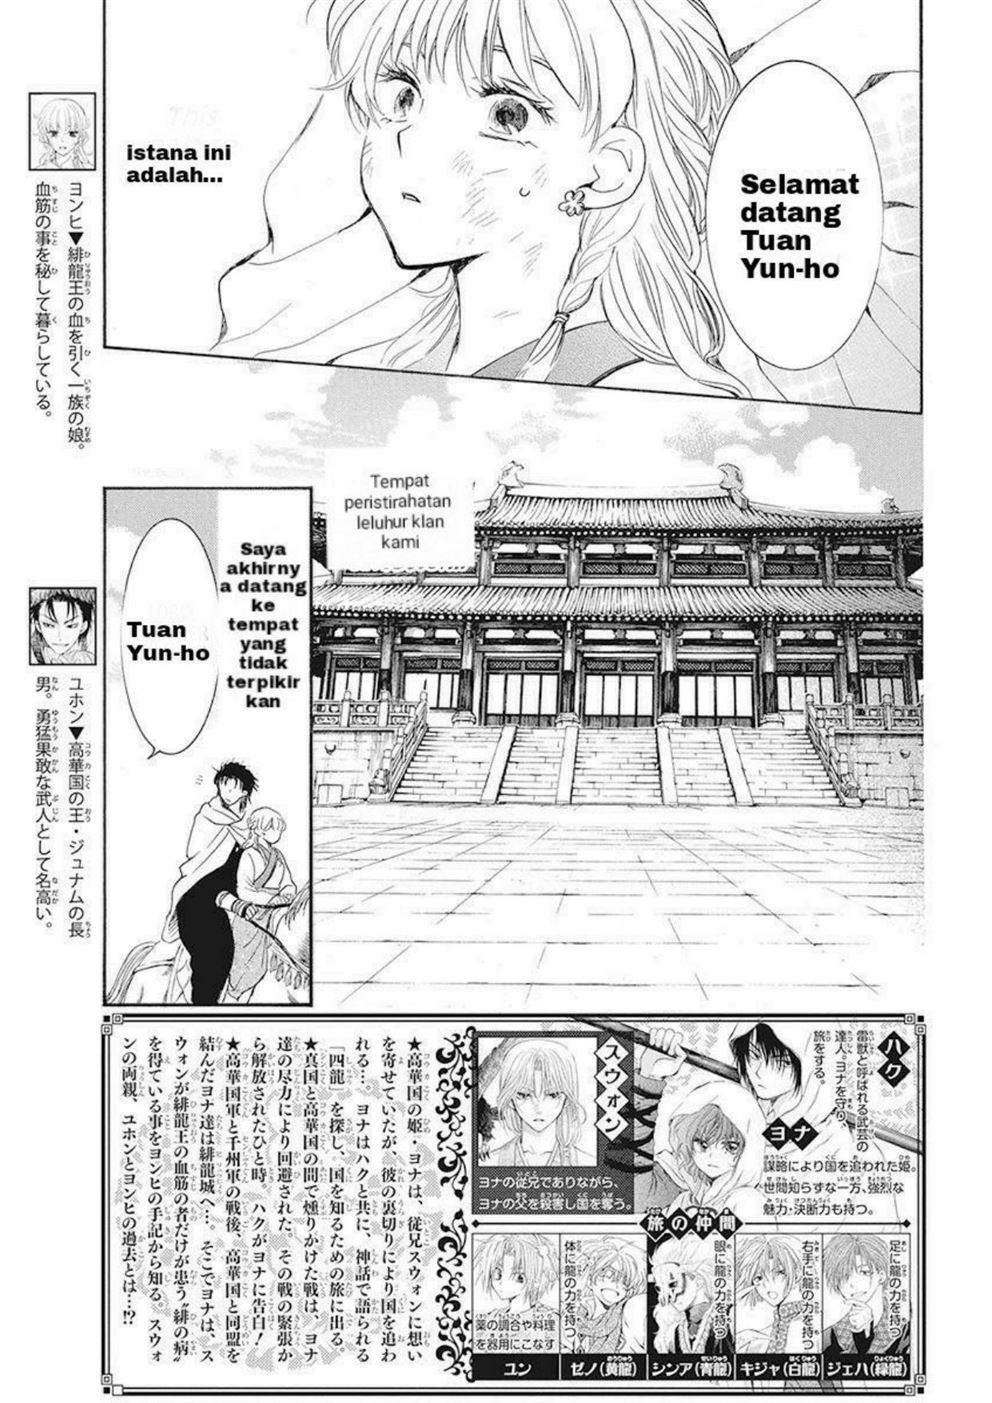 Akatsuki no Yona Chapter 191